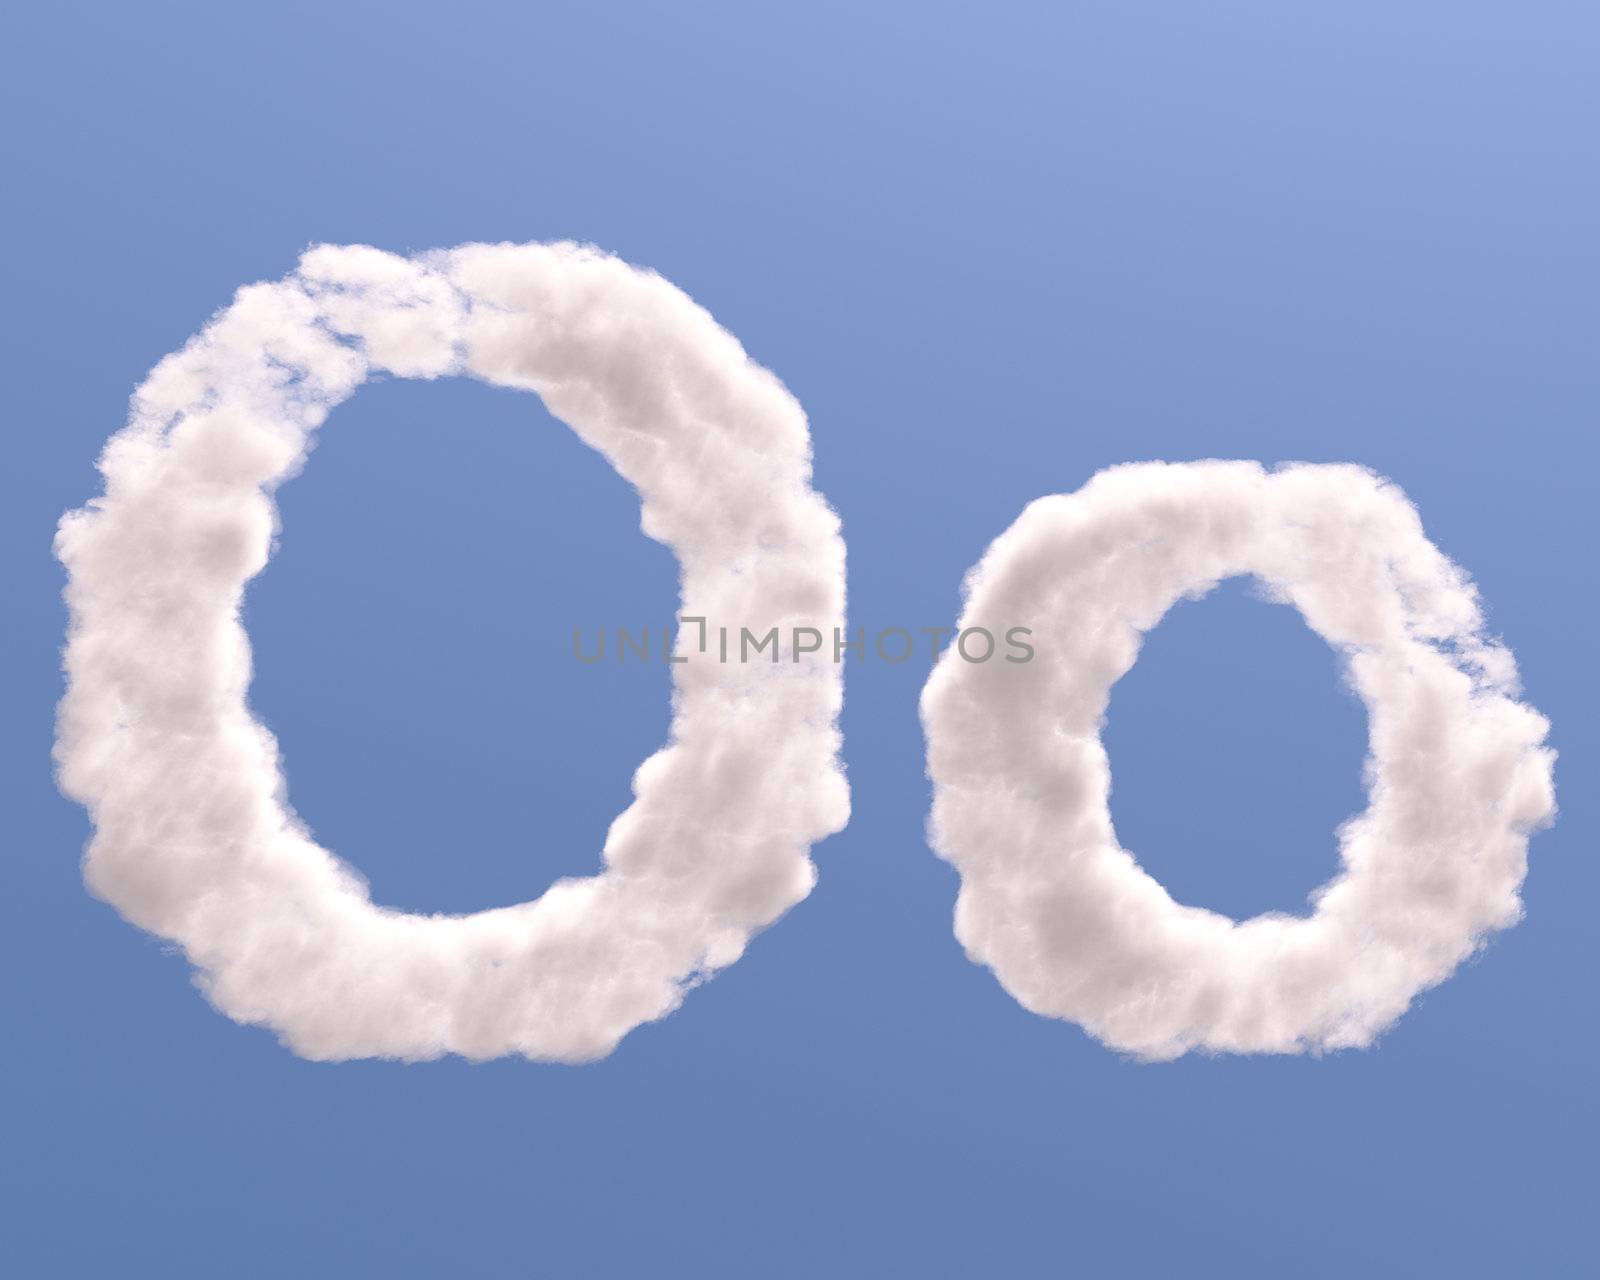 Letter O cloud shape by Zelfit